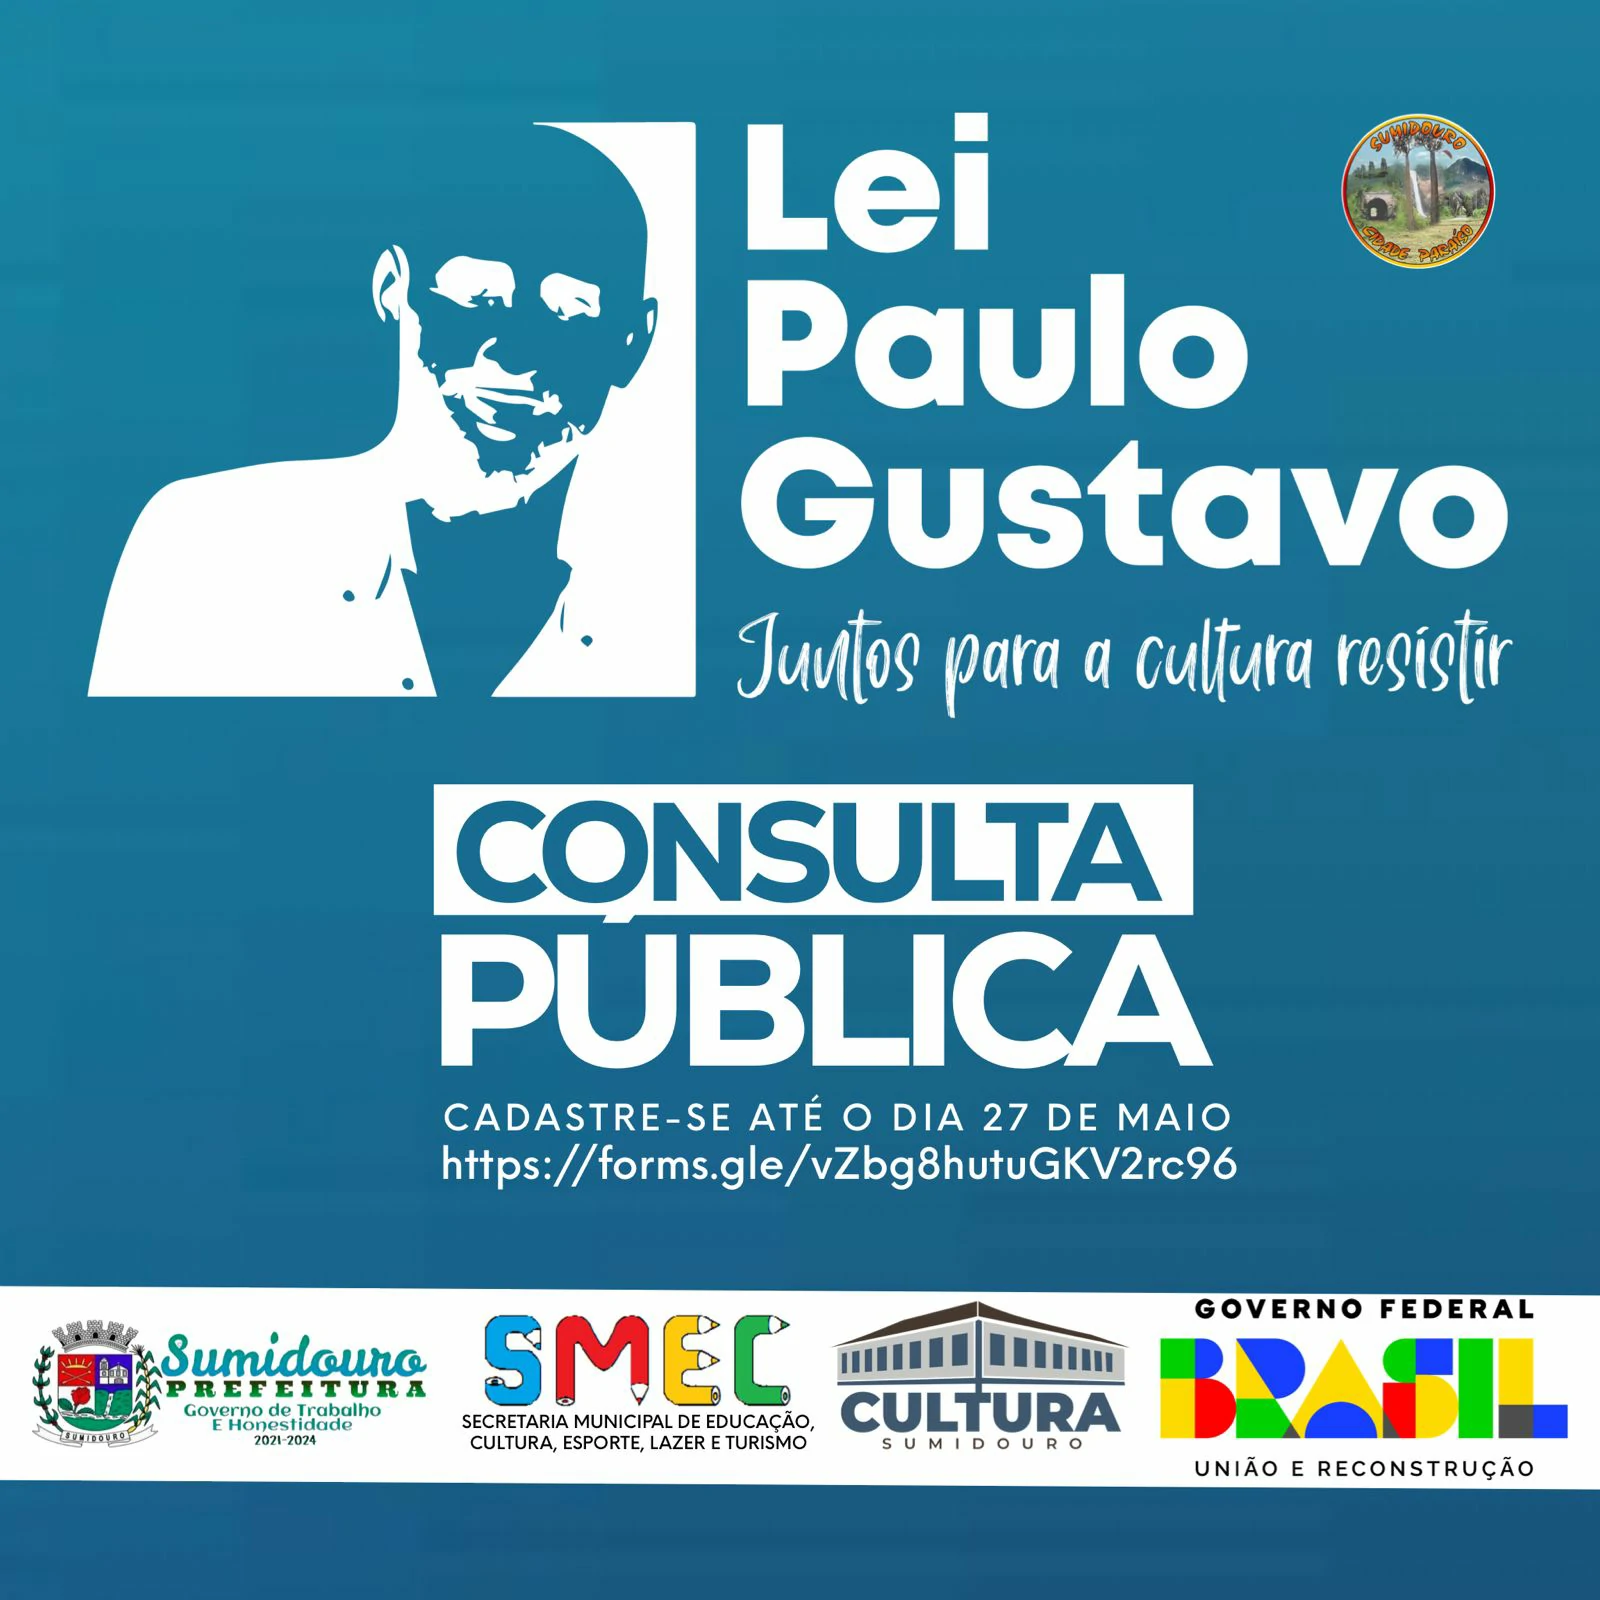 CONSULTA PÚBLICA PARA APLICAÇÃO DA LEI PAULO GUSTAVO EM SUMIDOURO - RJ